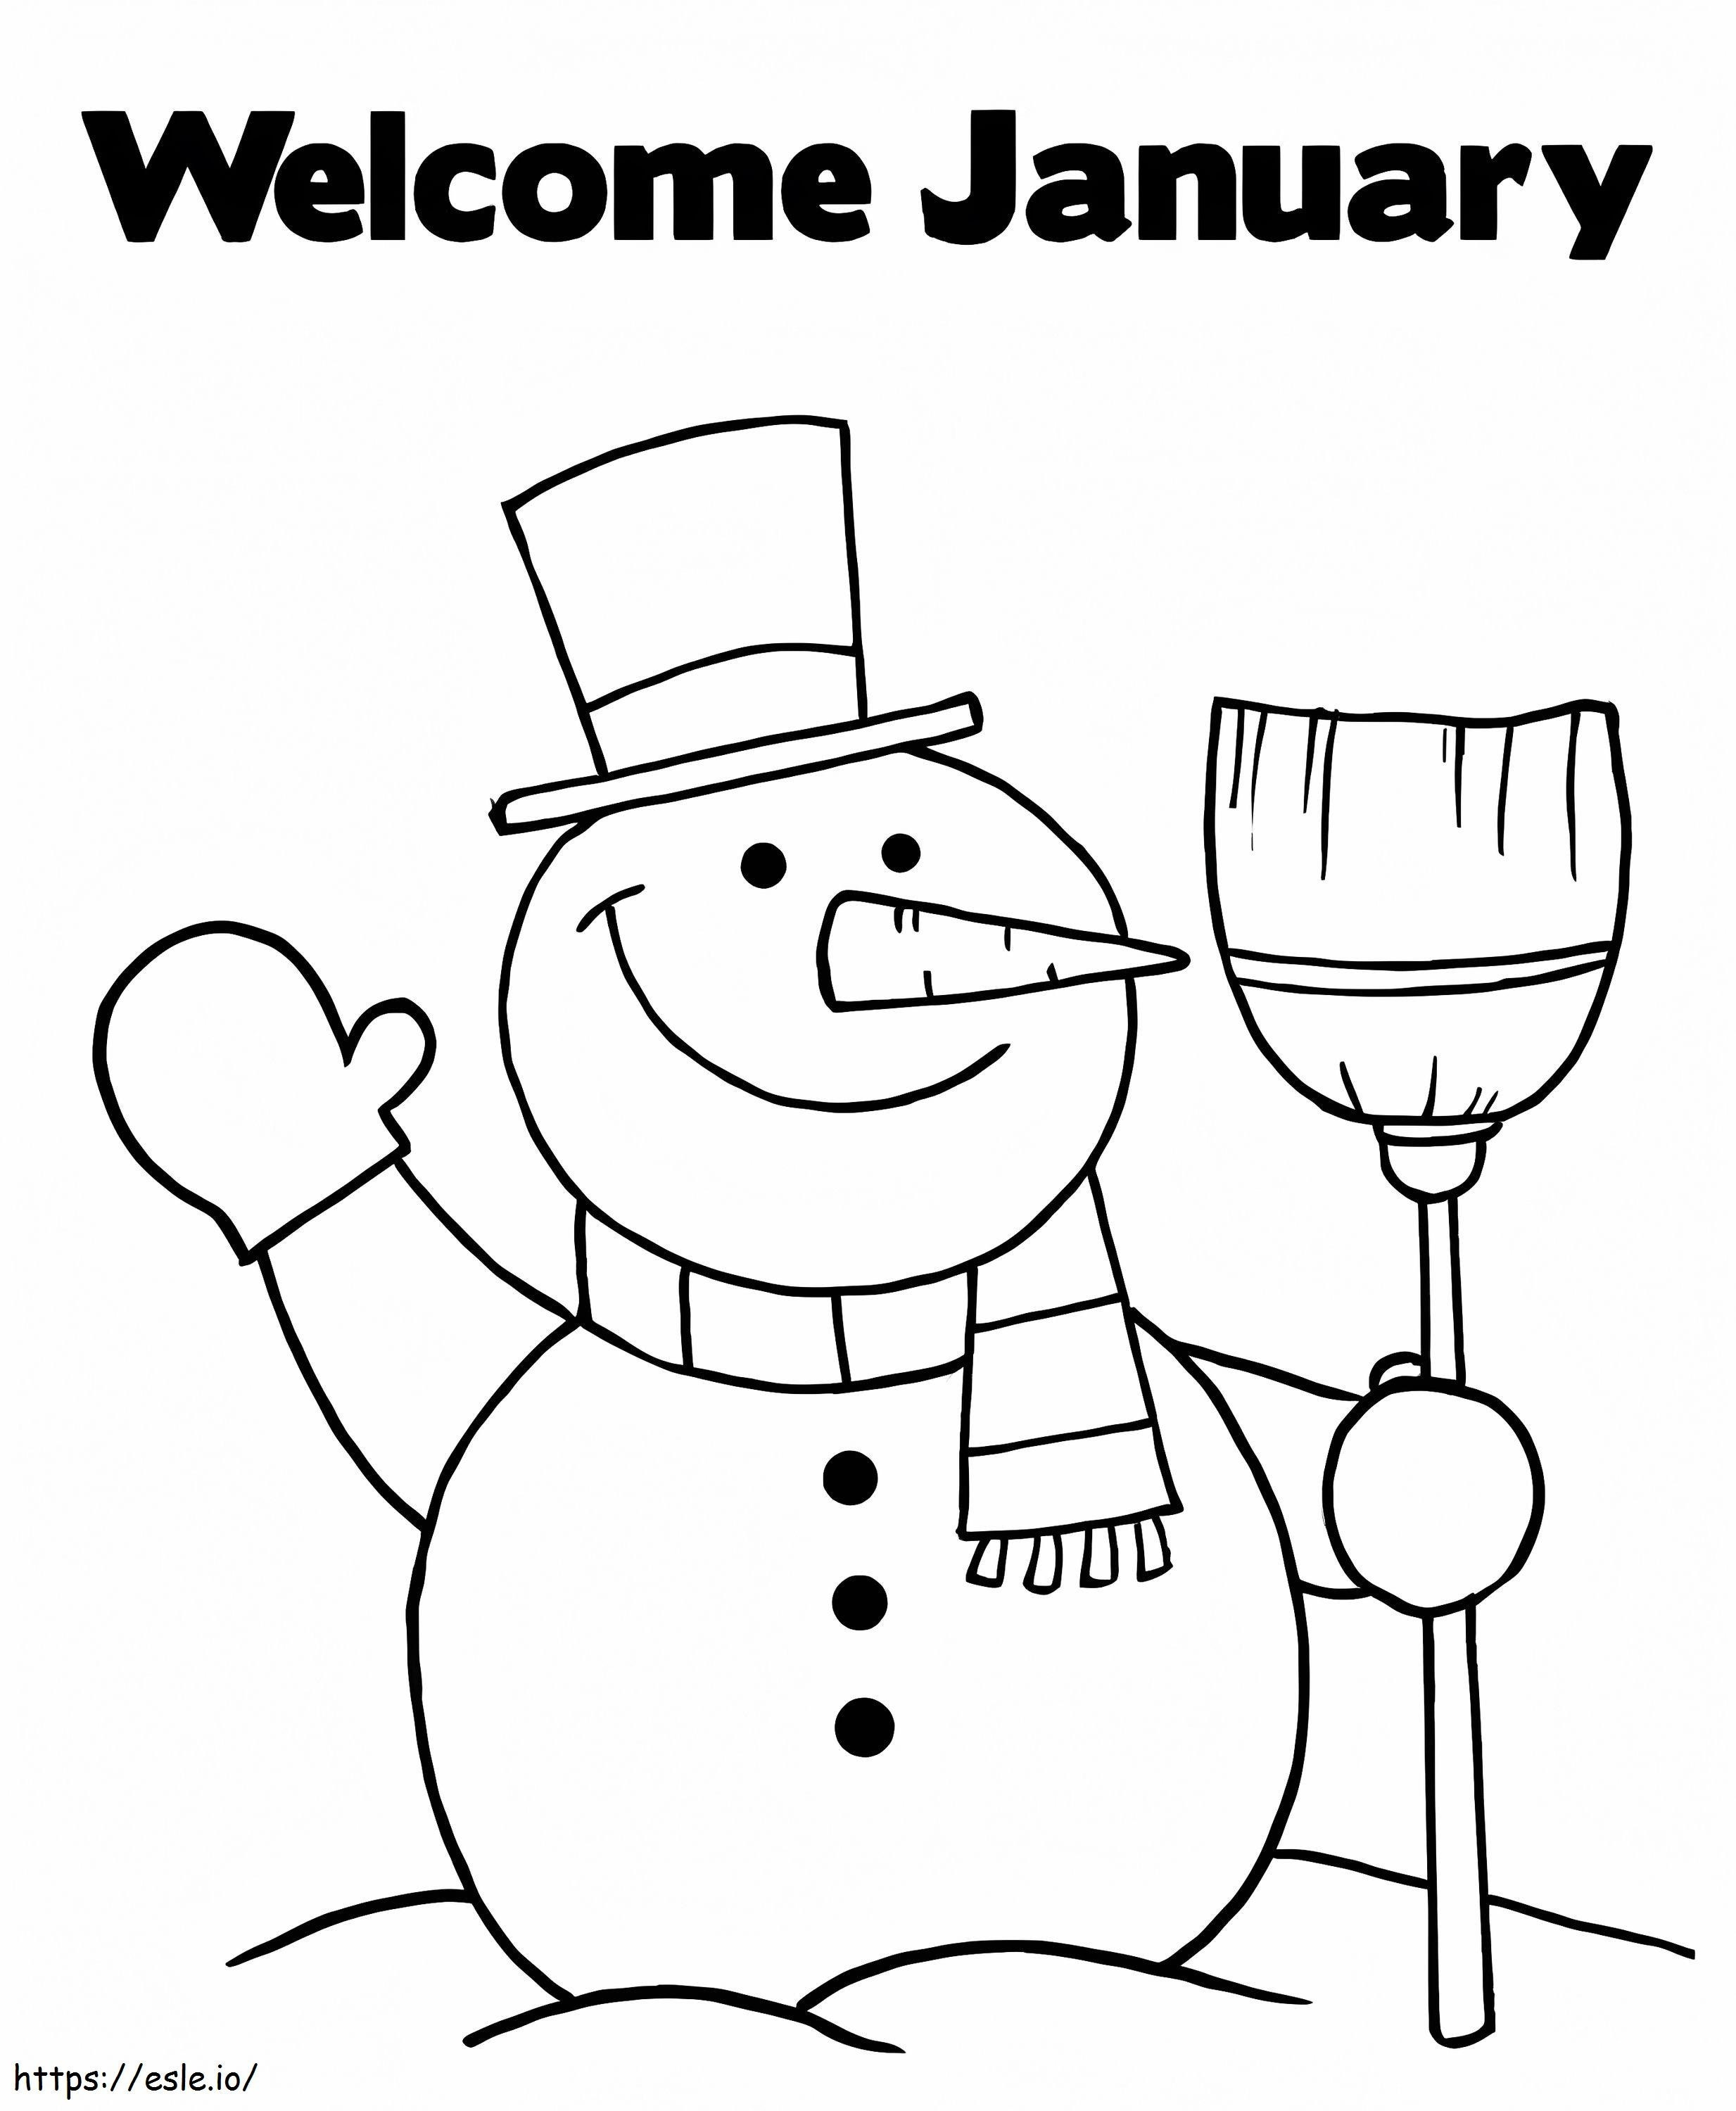 Sneeuwpop Welkom januari kleurplaat kleurplaat